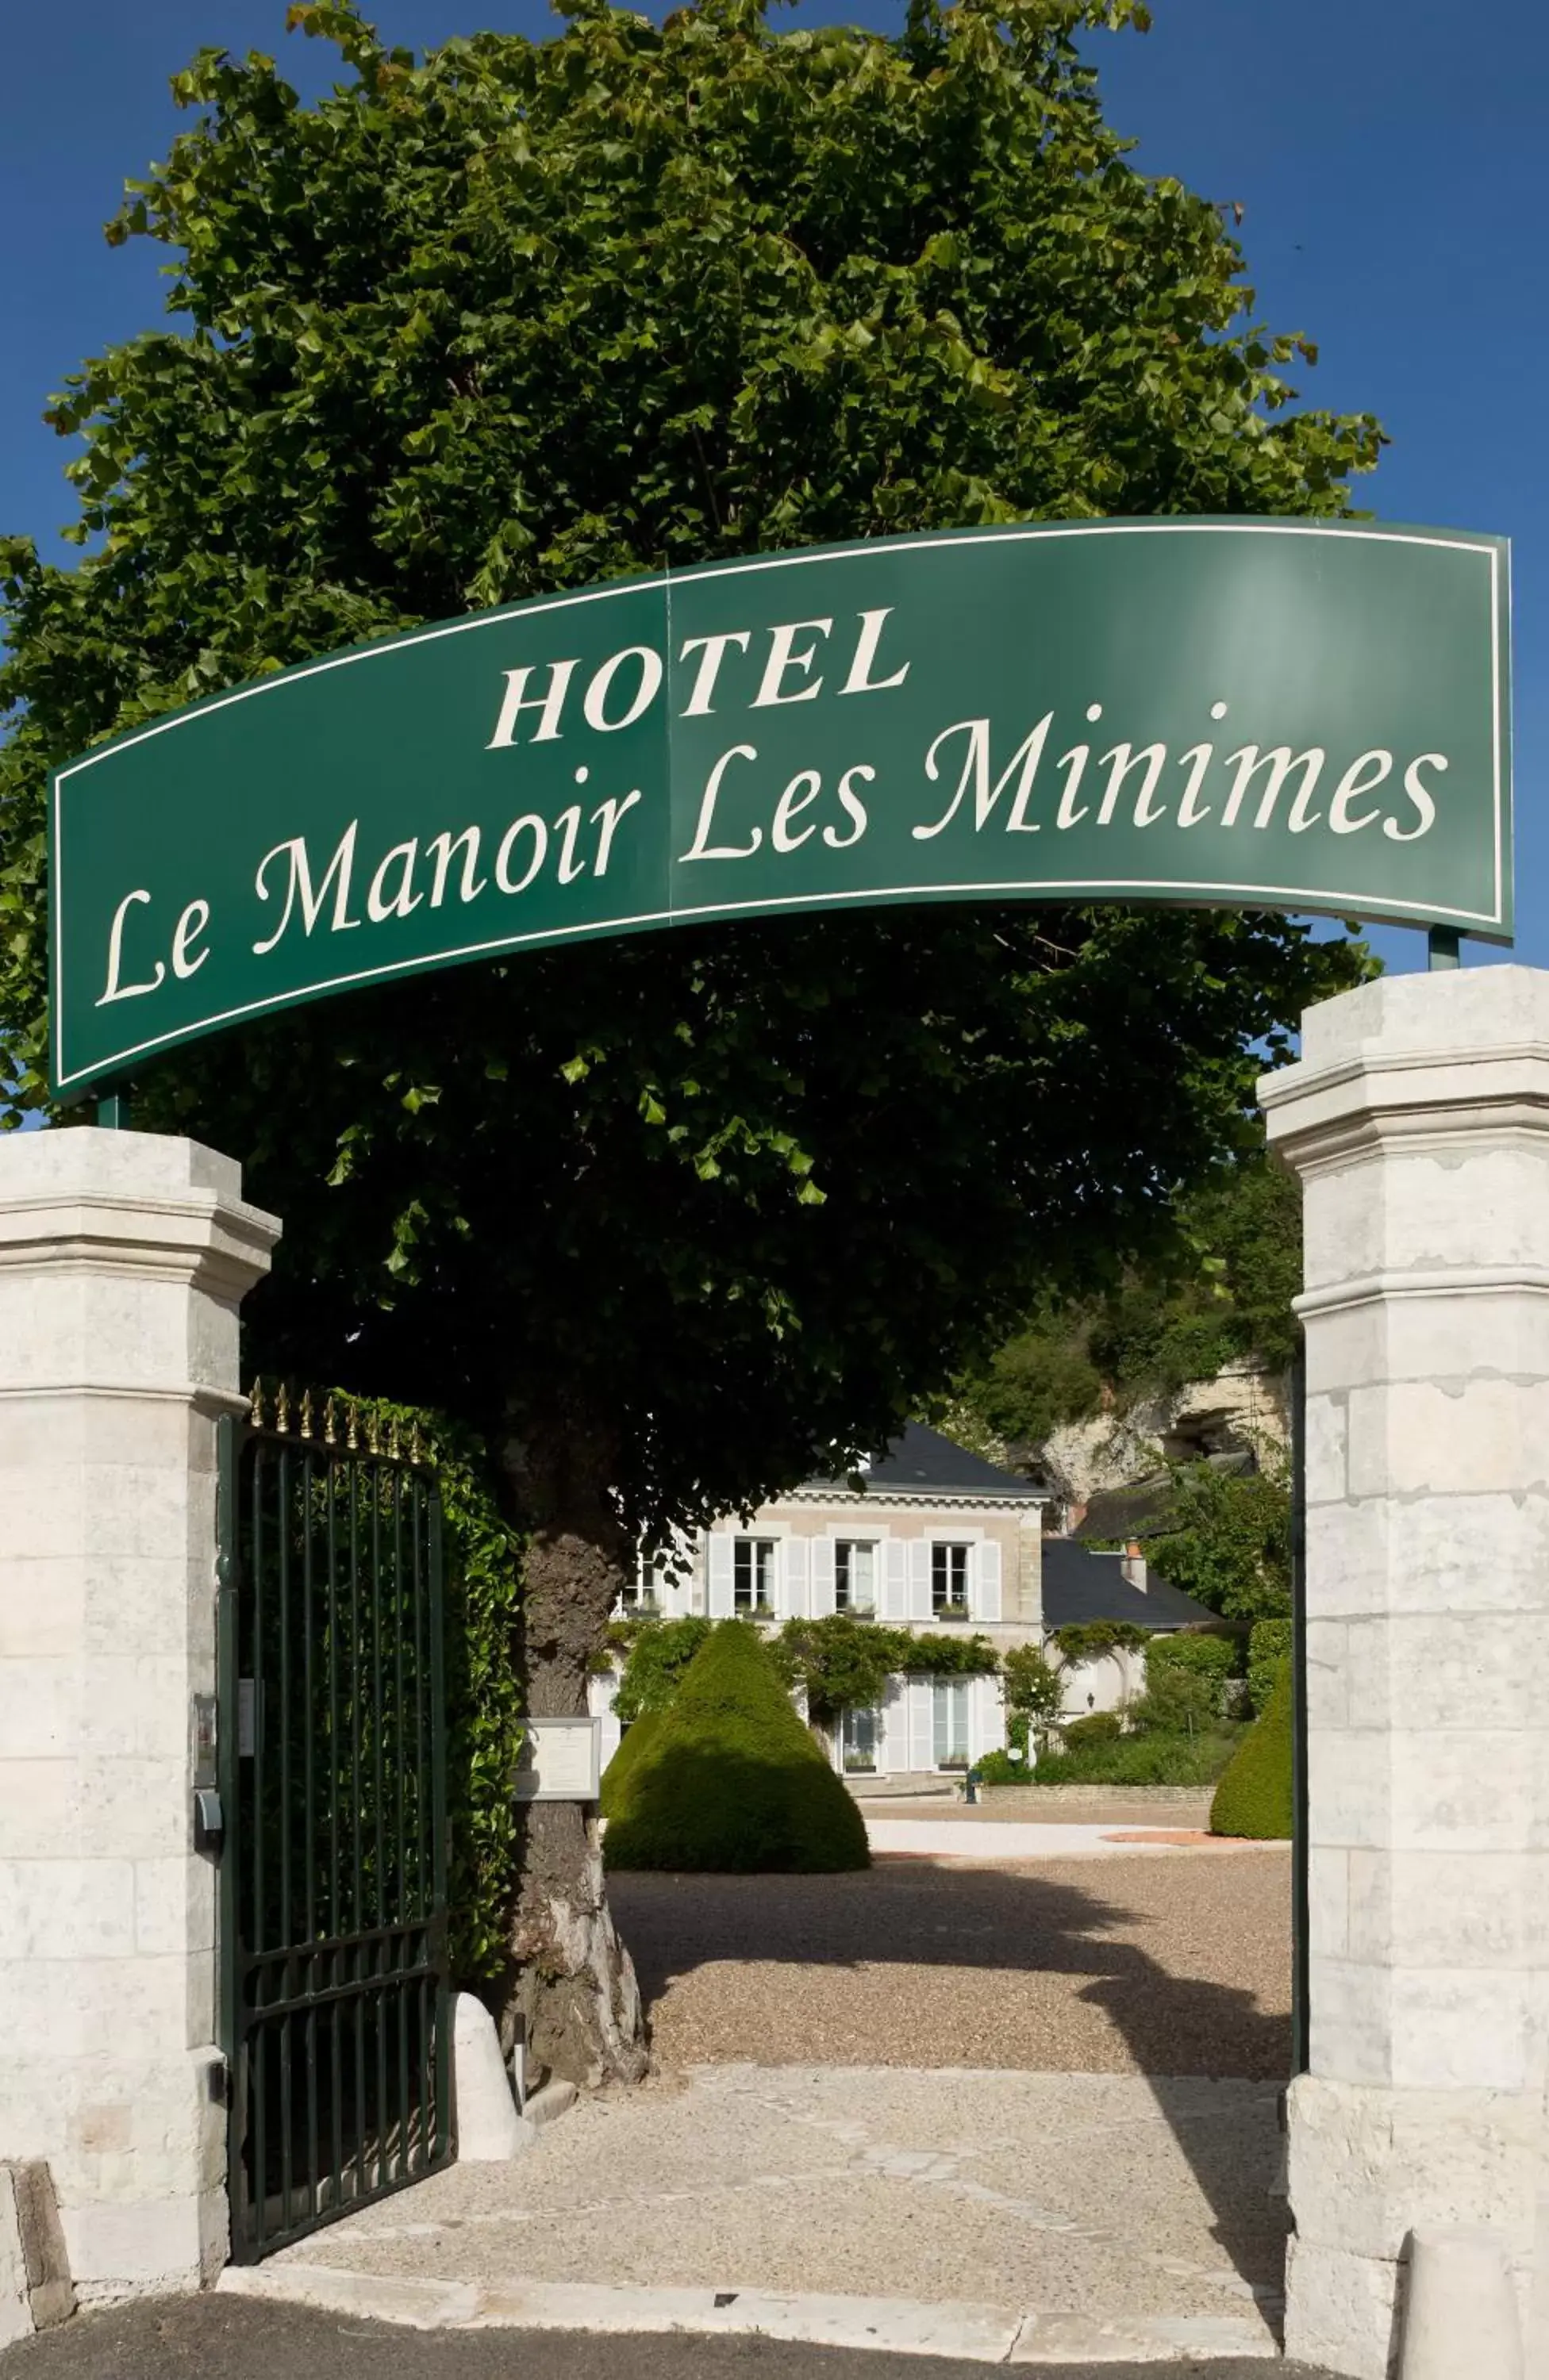 Facade/entrance in Le Manoir Les Minimes